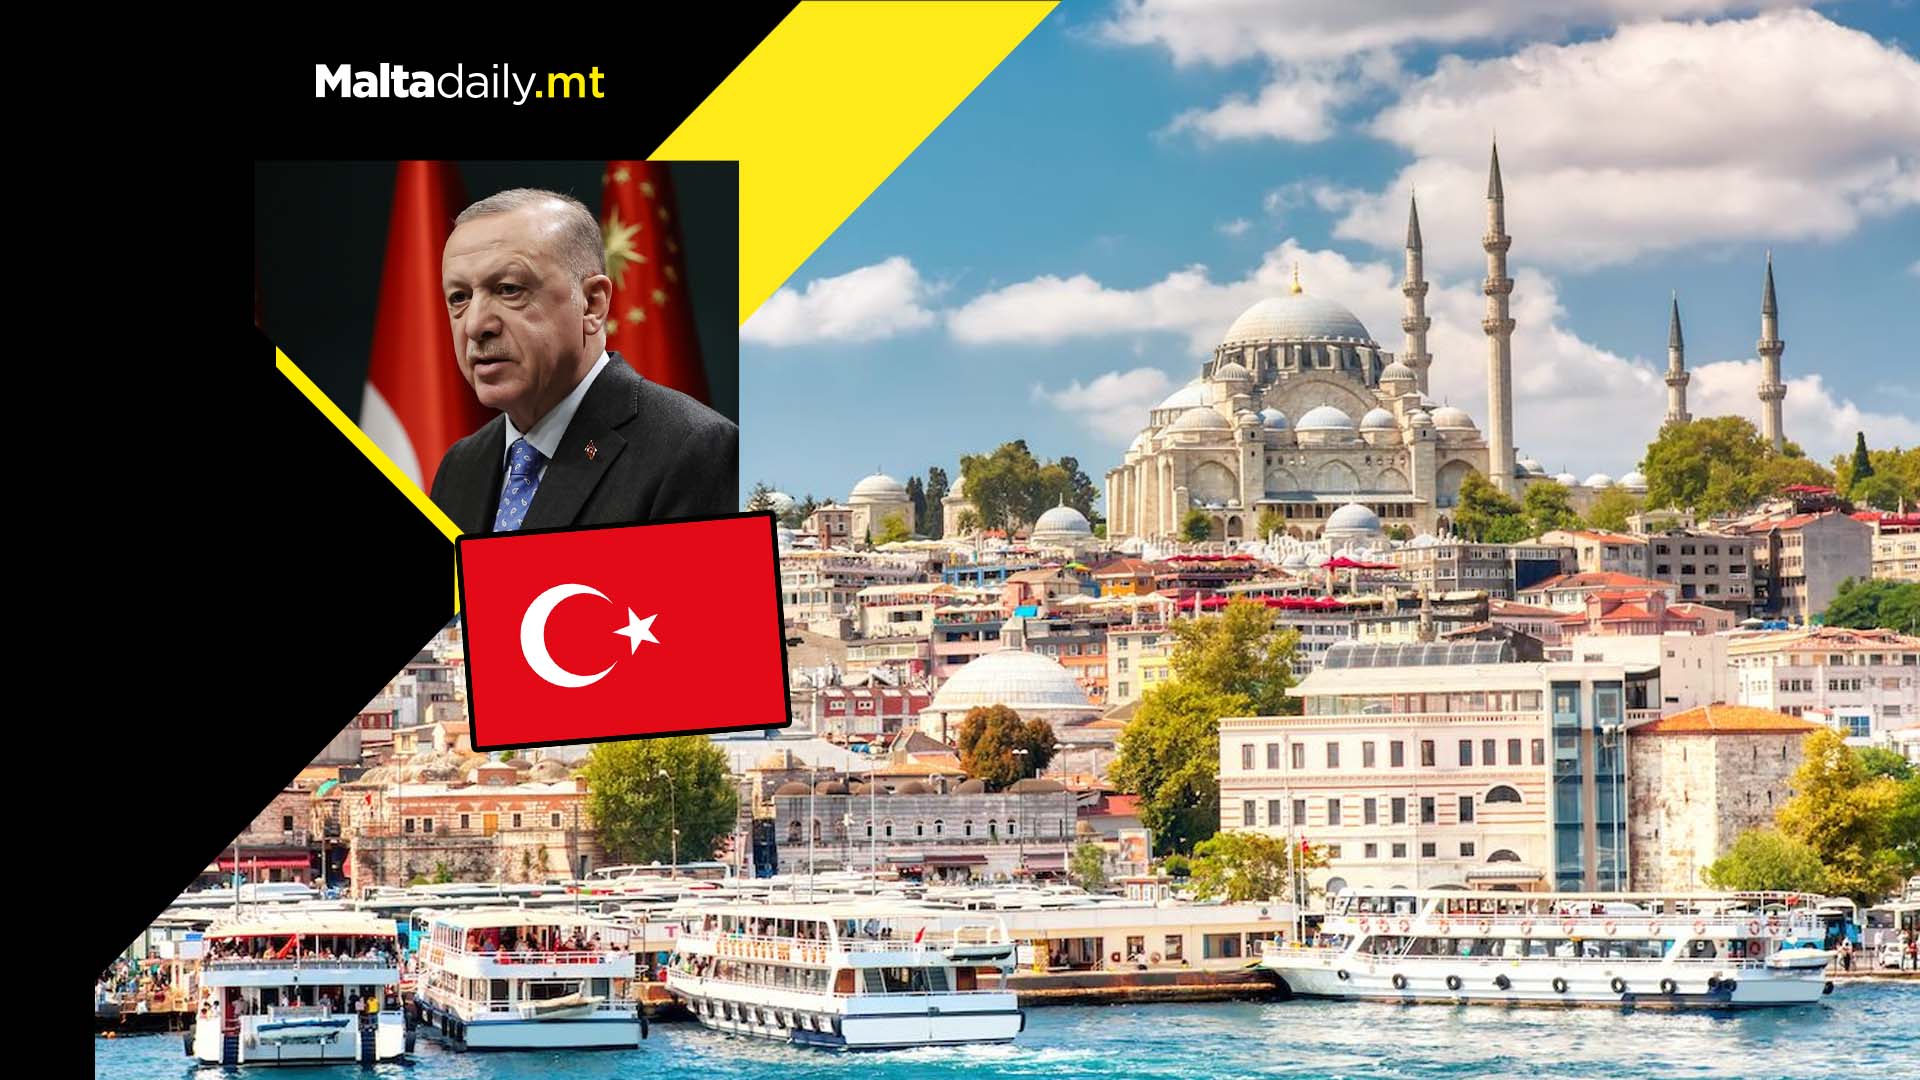 Turkey officially renamed itself as Türkiye